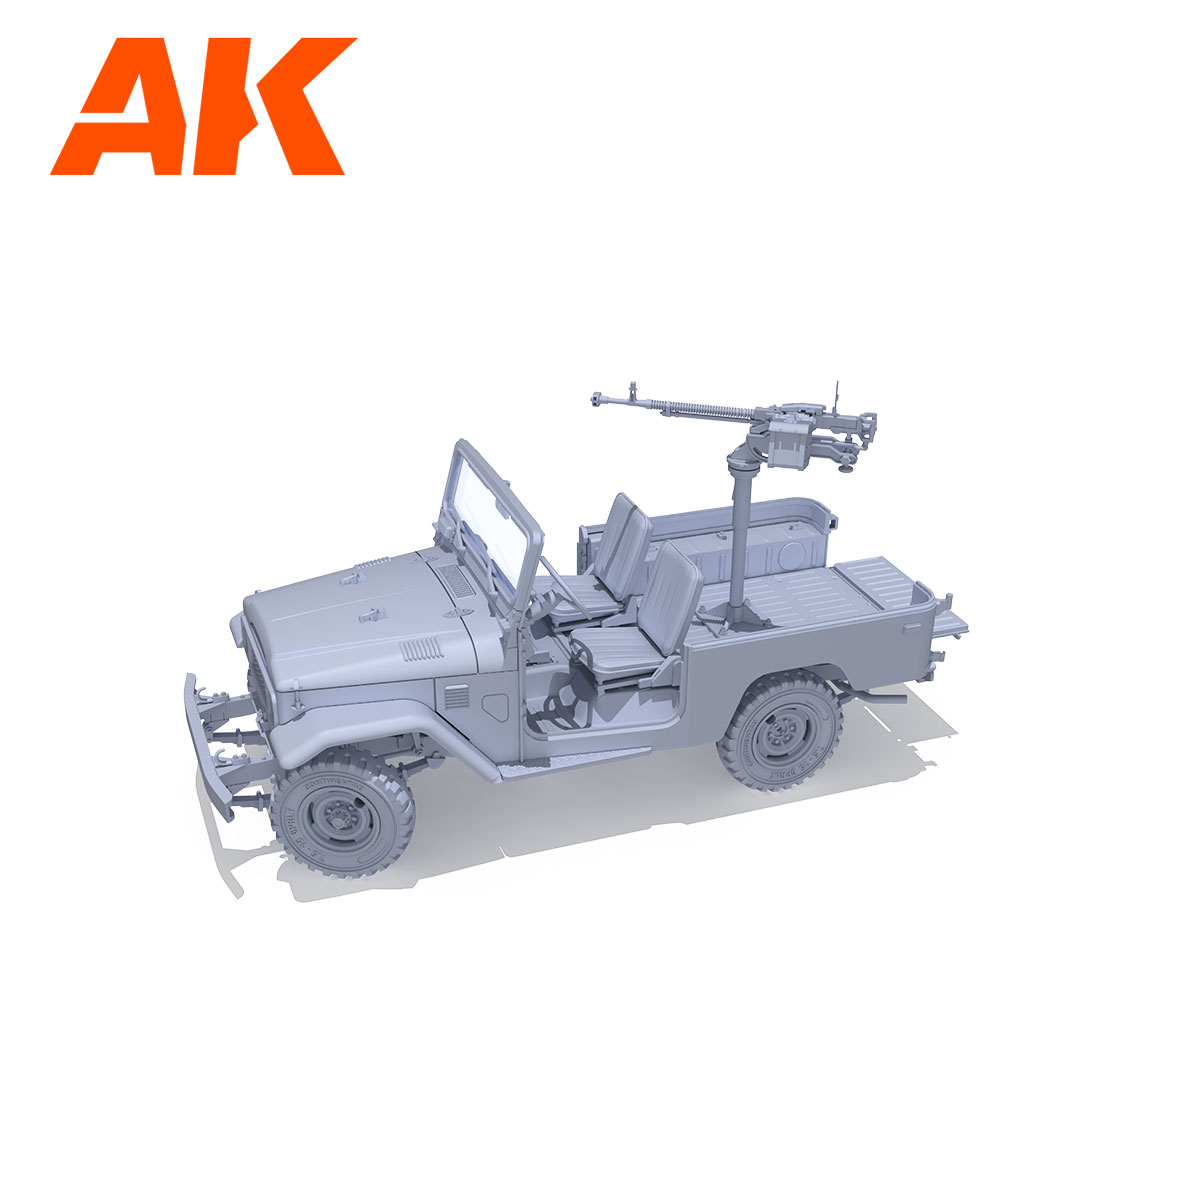 FJ43 SUV from AK Interactive